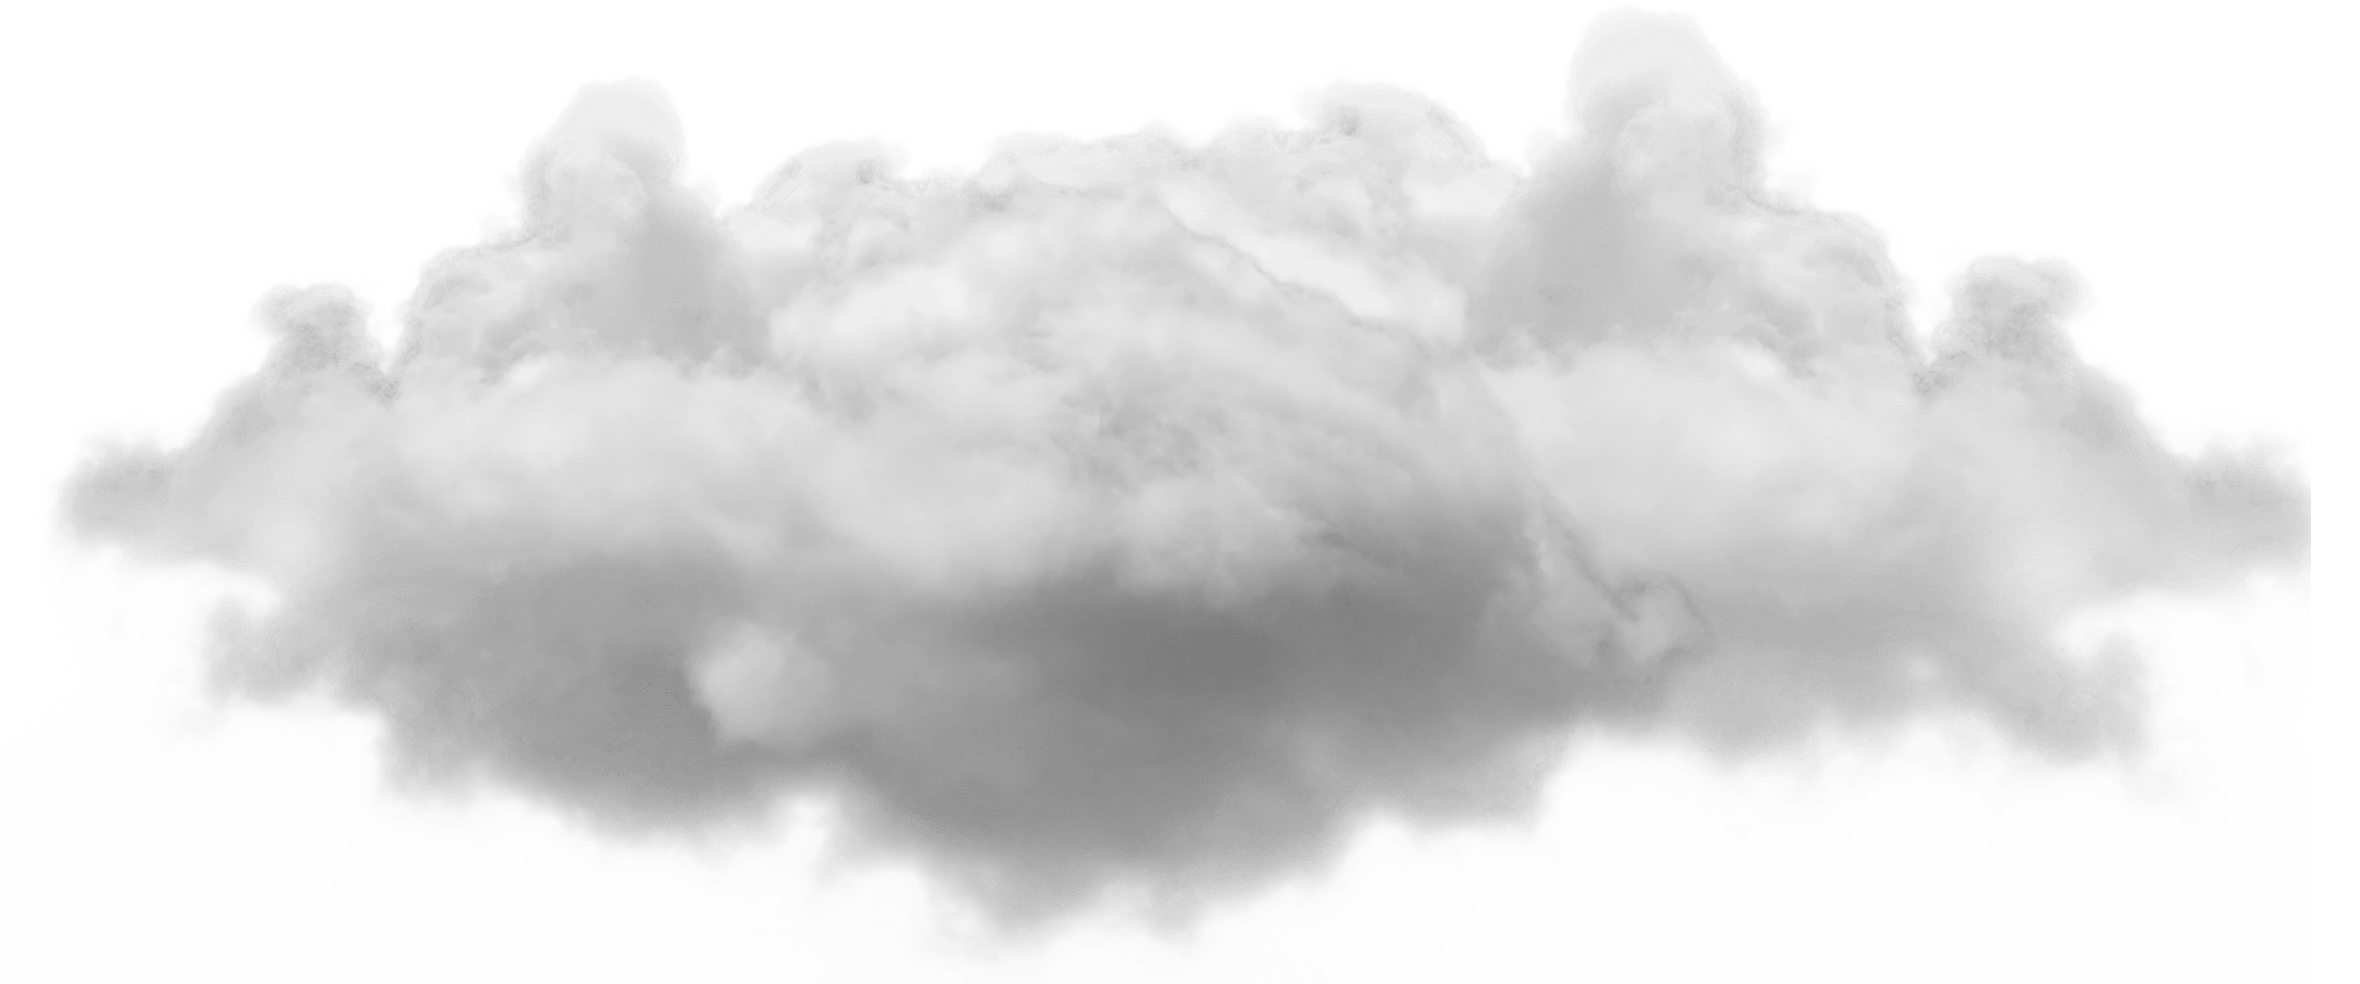 Wolken transparentes Bild